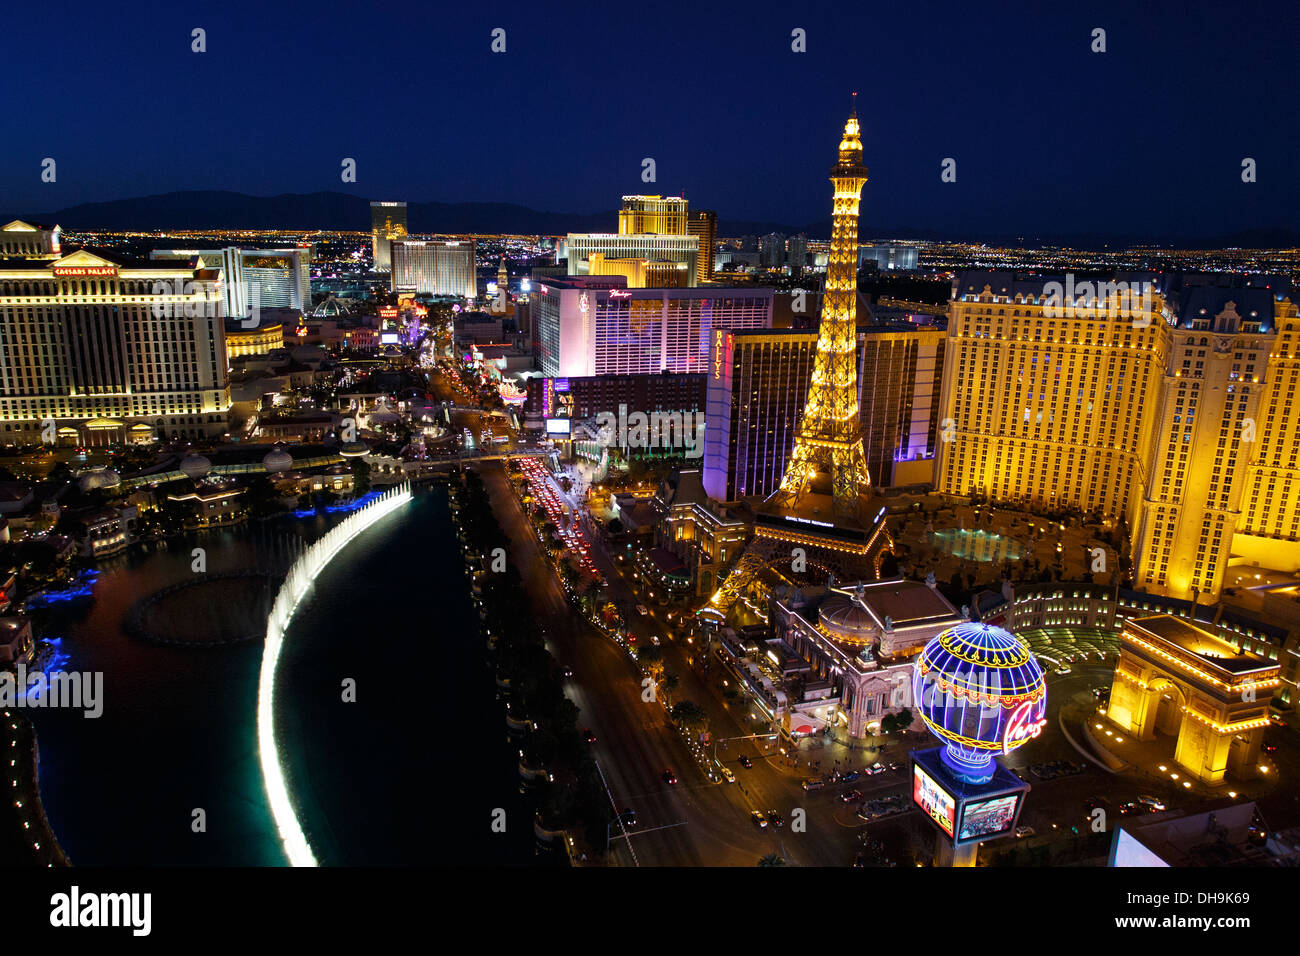 Las Vegas Strip, Las Vegas, Nevada. Stock Photo